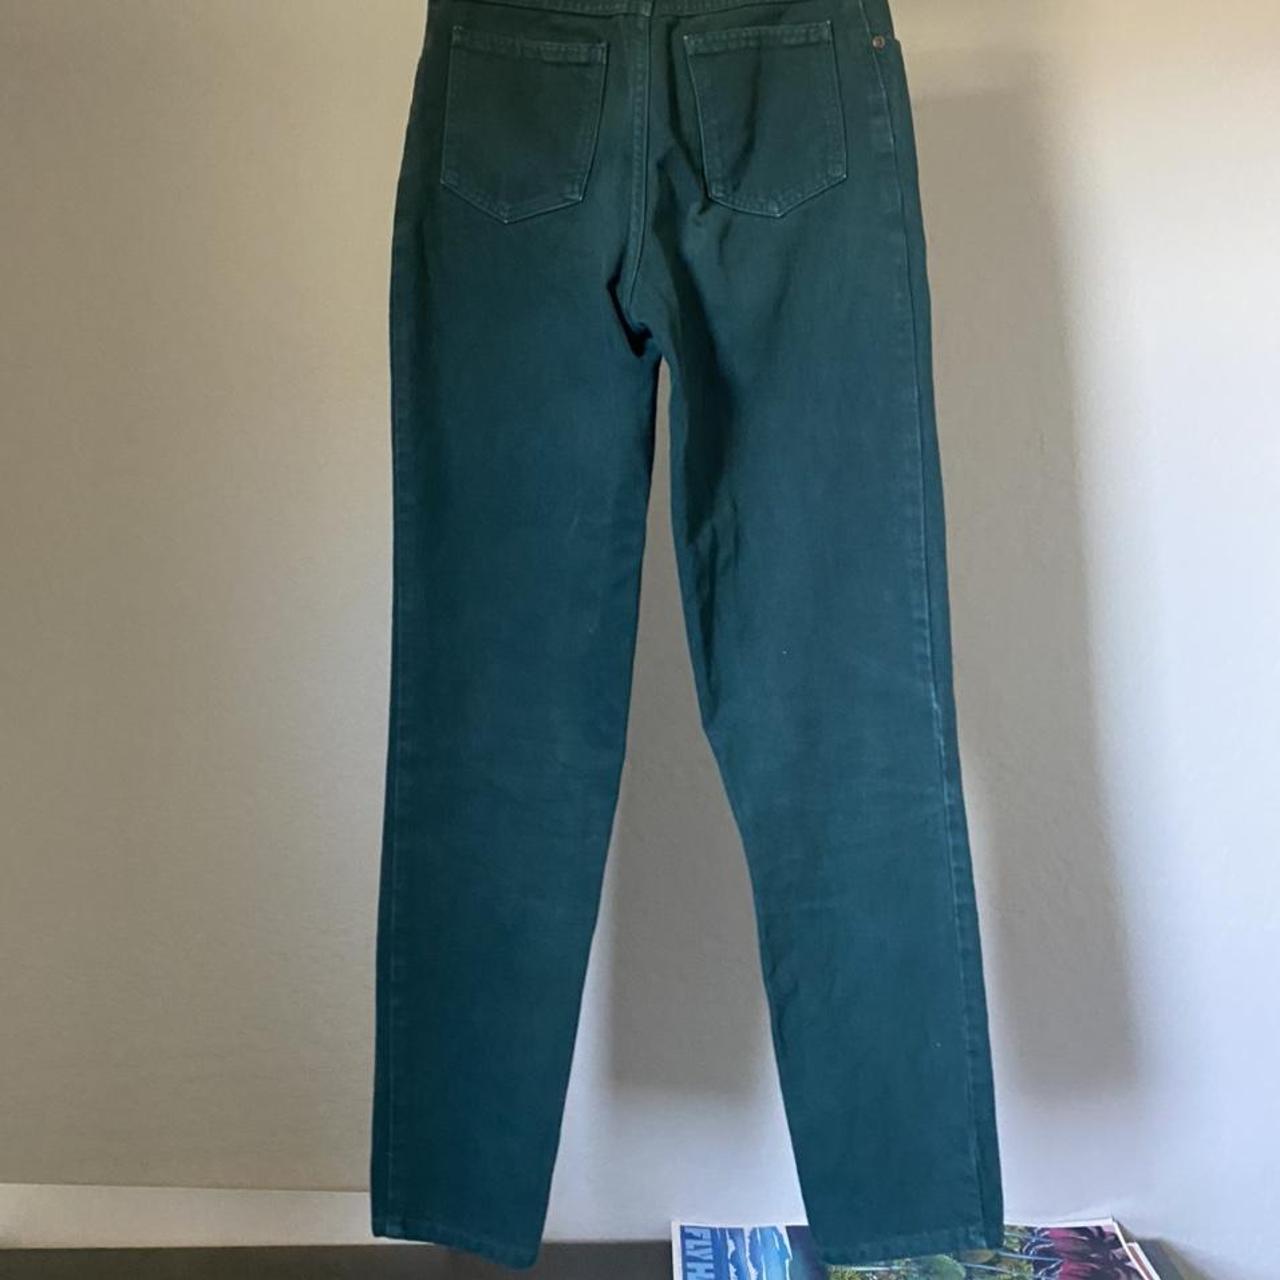 Women's Green Jeans | Depop